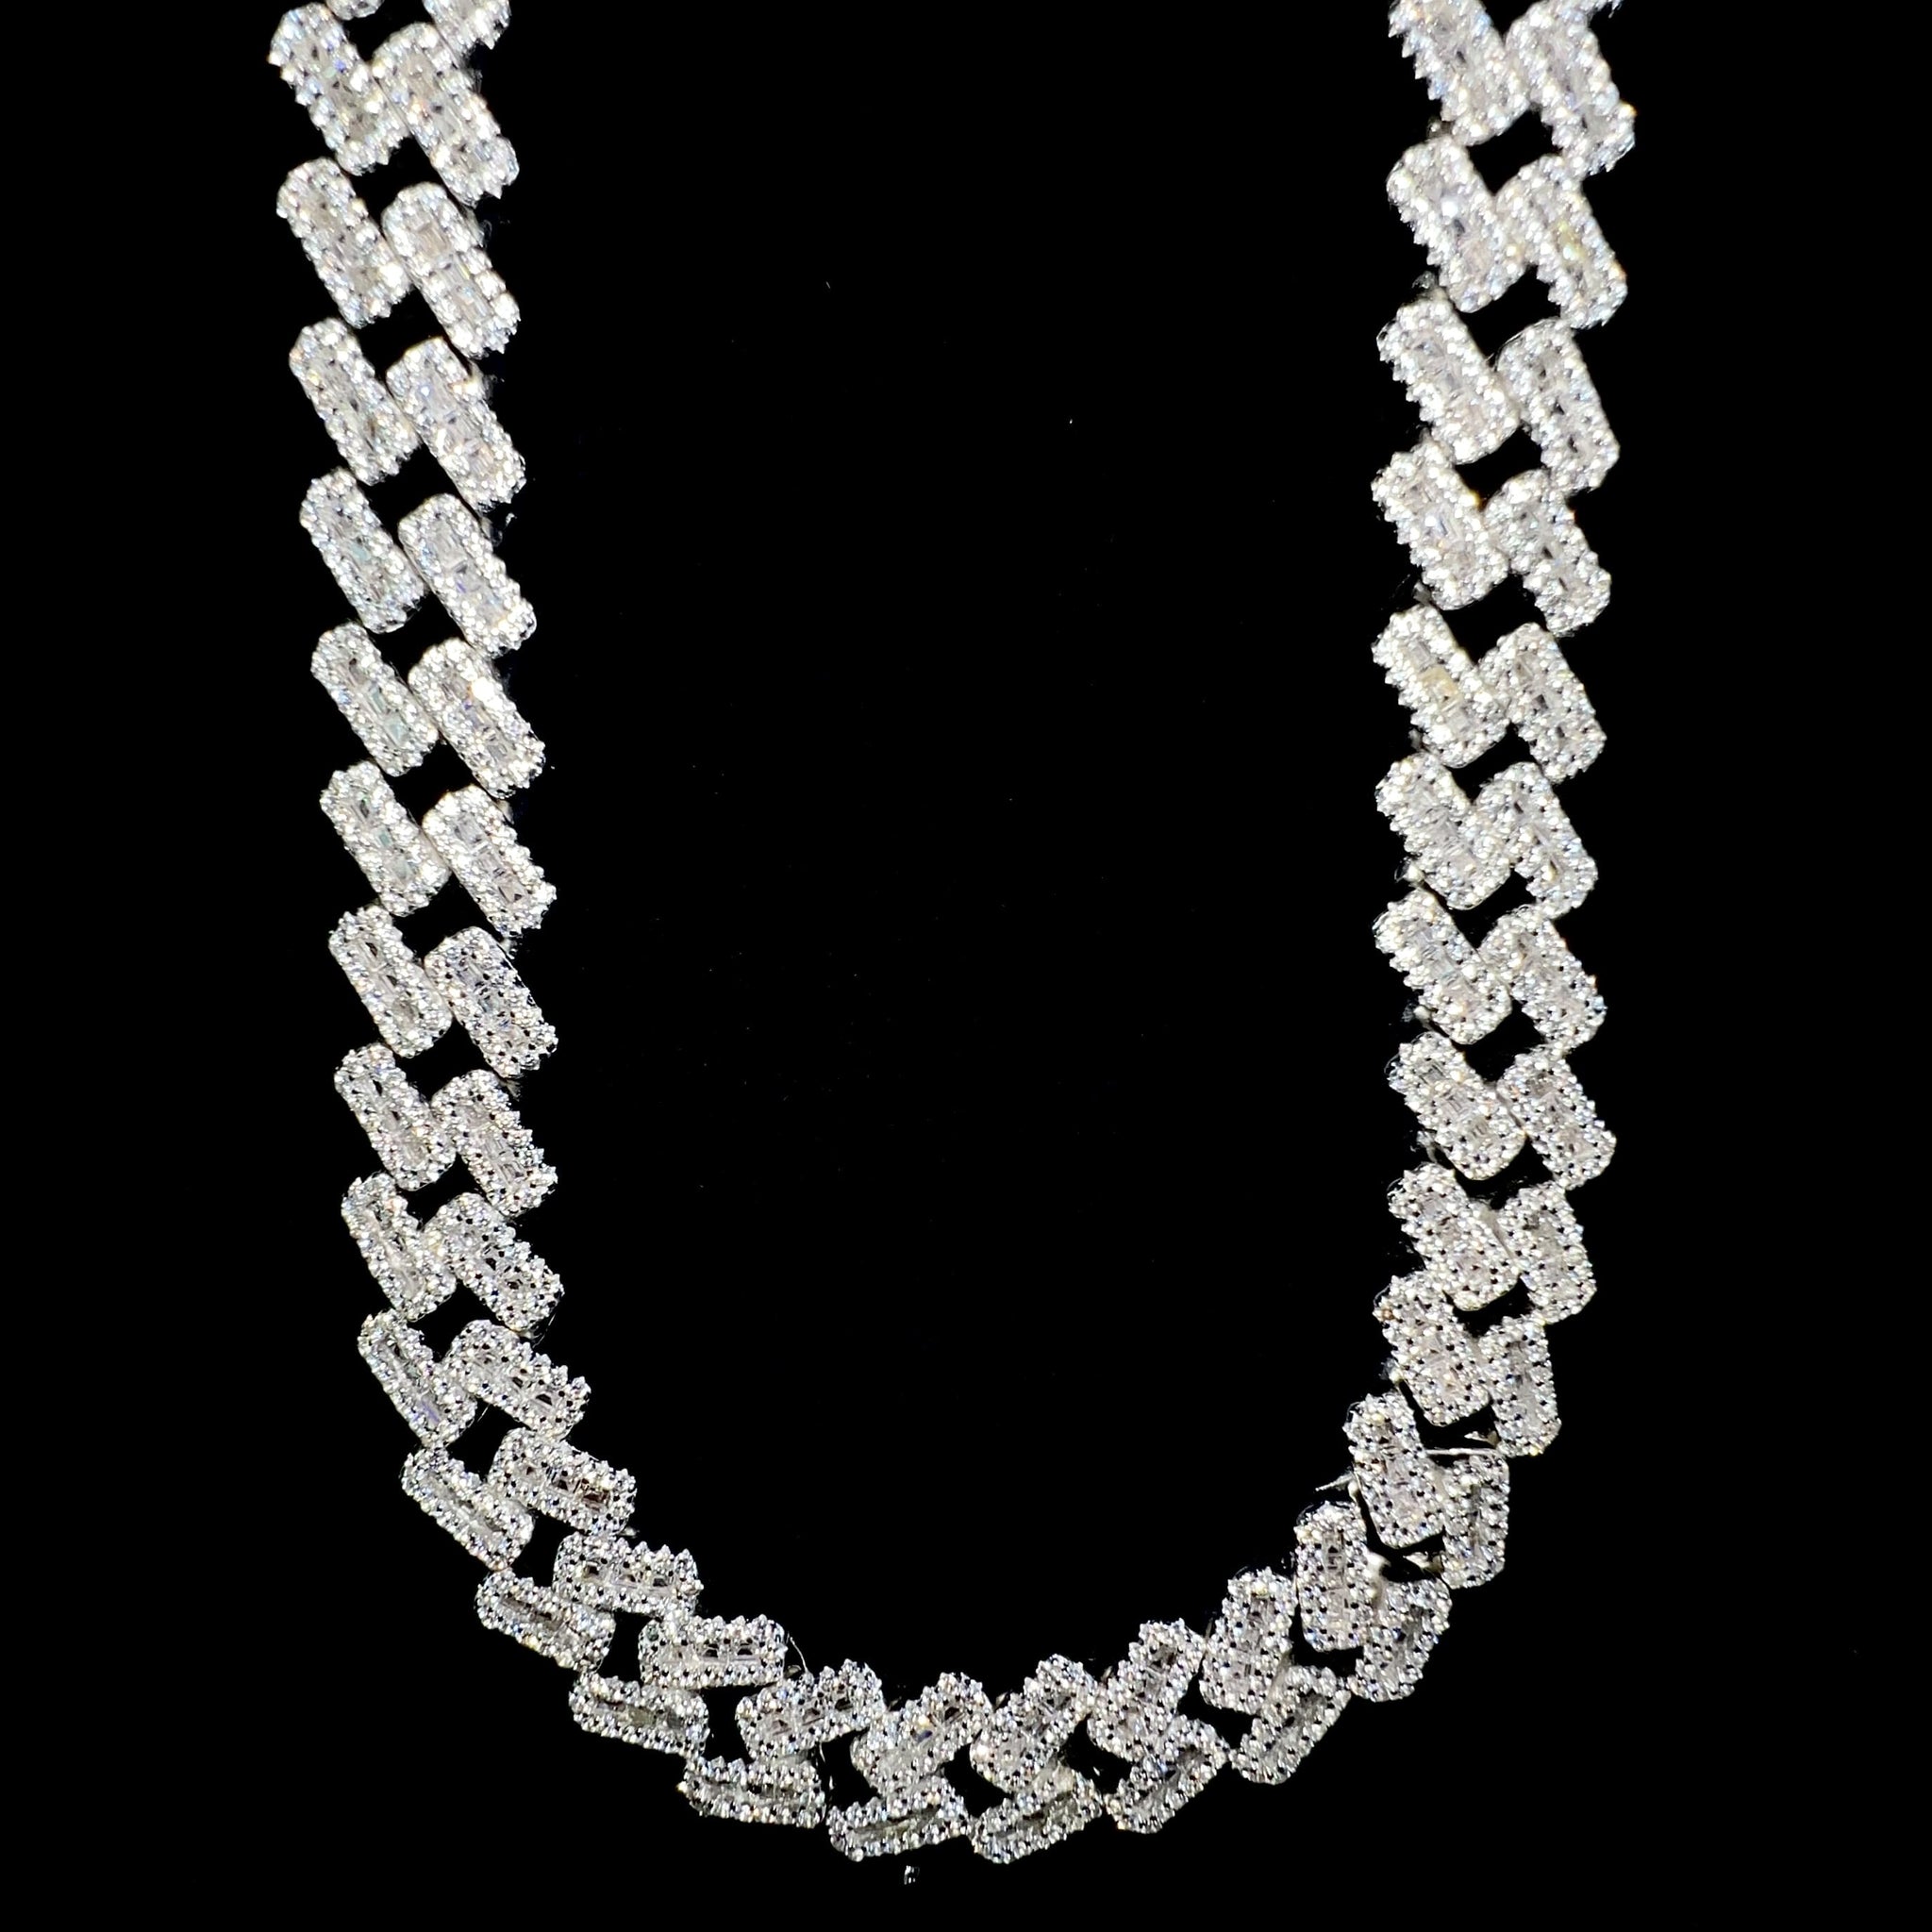 Baguette Cuban Prong Link Chain - 60cm / 10mm - Silver 925 - Sehgal Dubai Collection